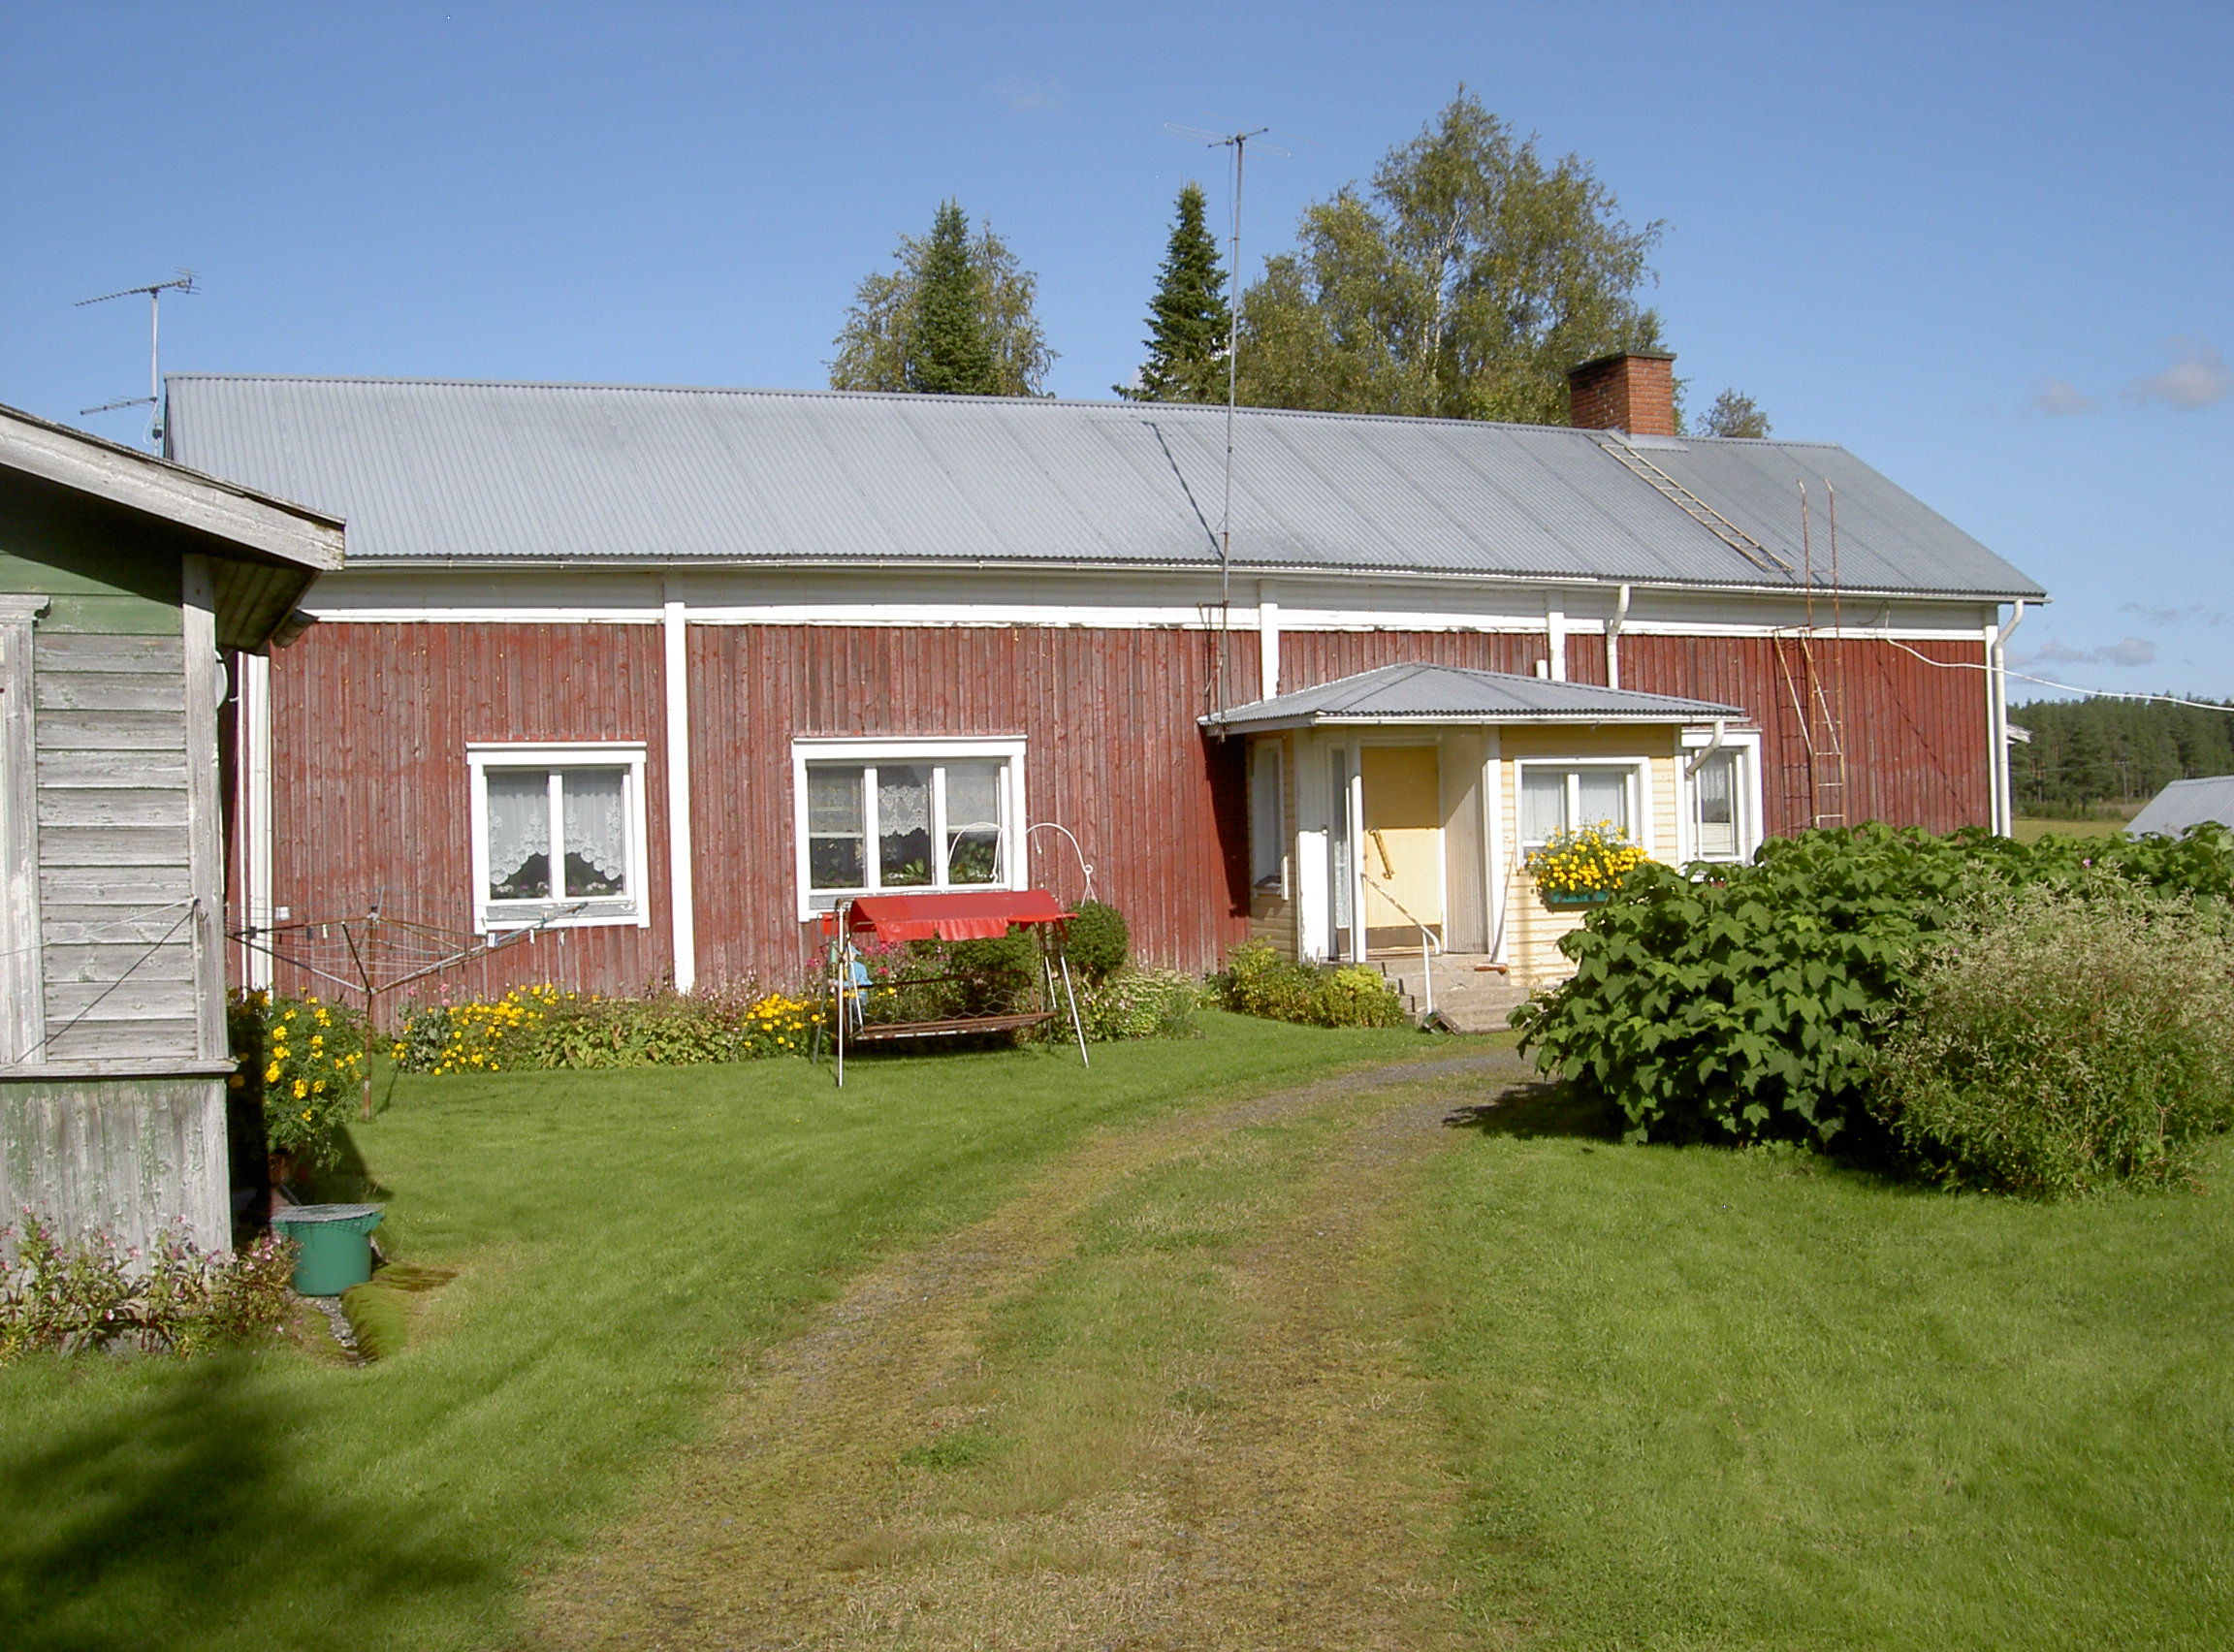 Den här gården på Korsbäckvägen 416 byggdes omkring 1911 och har efter det renoverats flera gånger. Fotot från 2017.